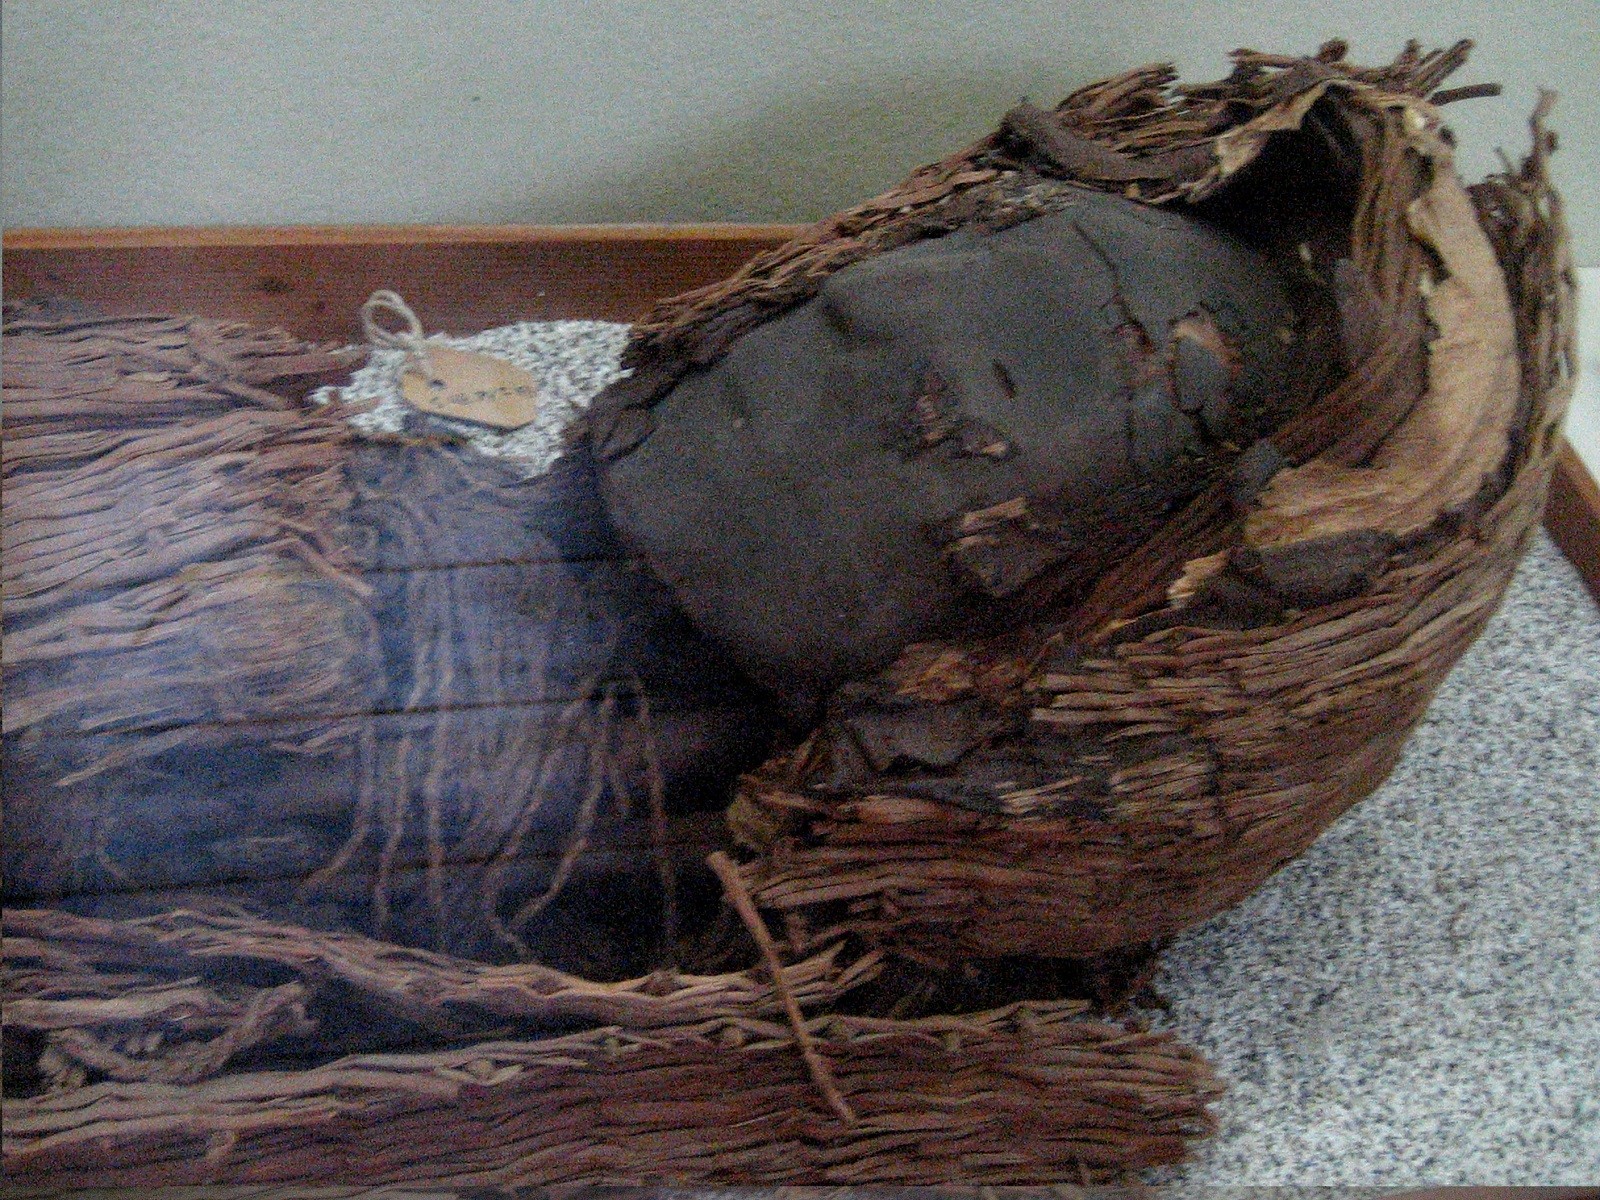 Te mumie są o tysiące lat starsze od egipskich. Znaleziono je w miejscu, w którym człowiek nie ma szans przetrwać